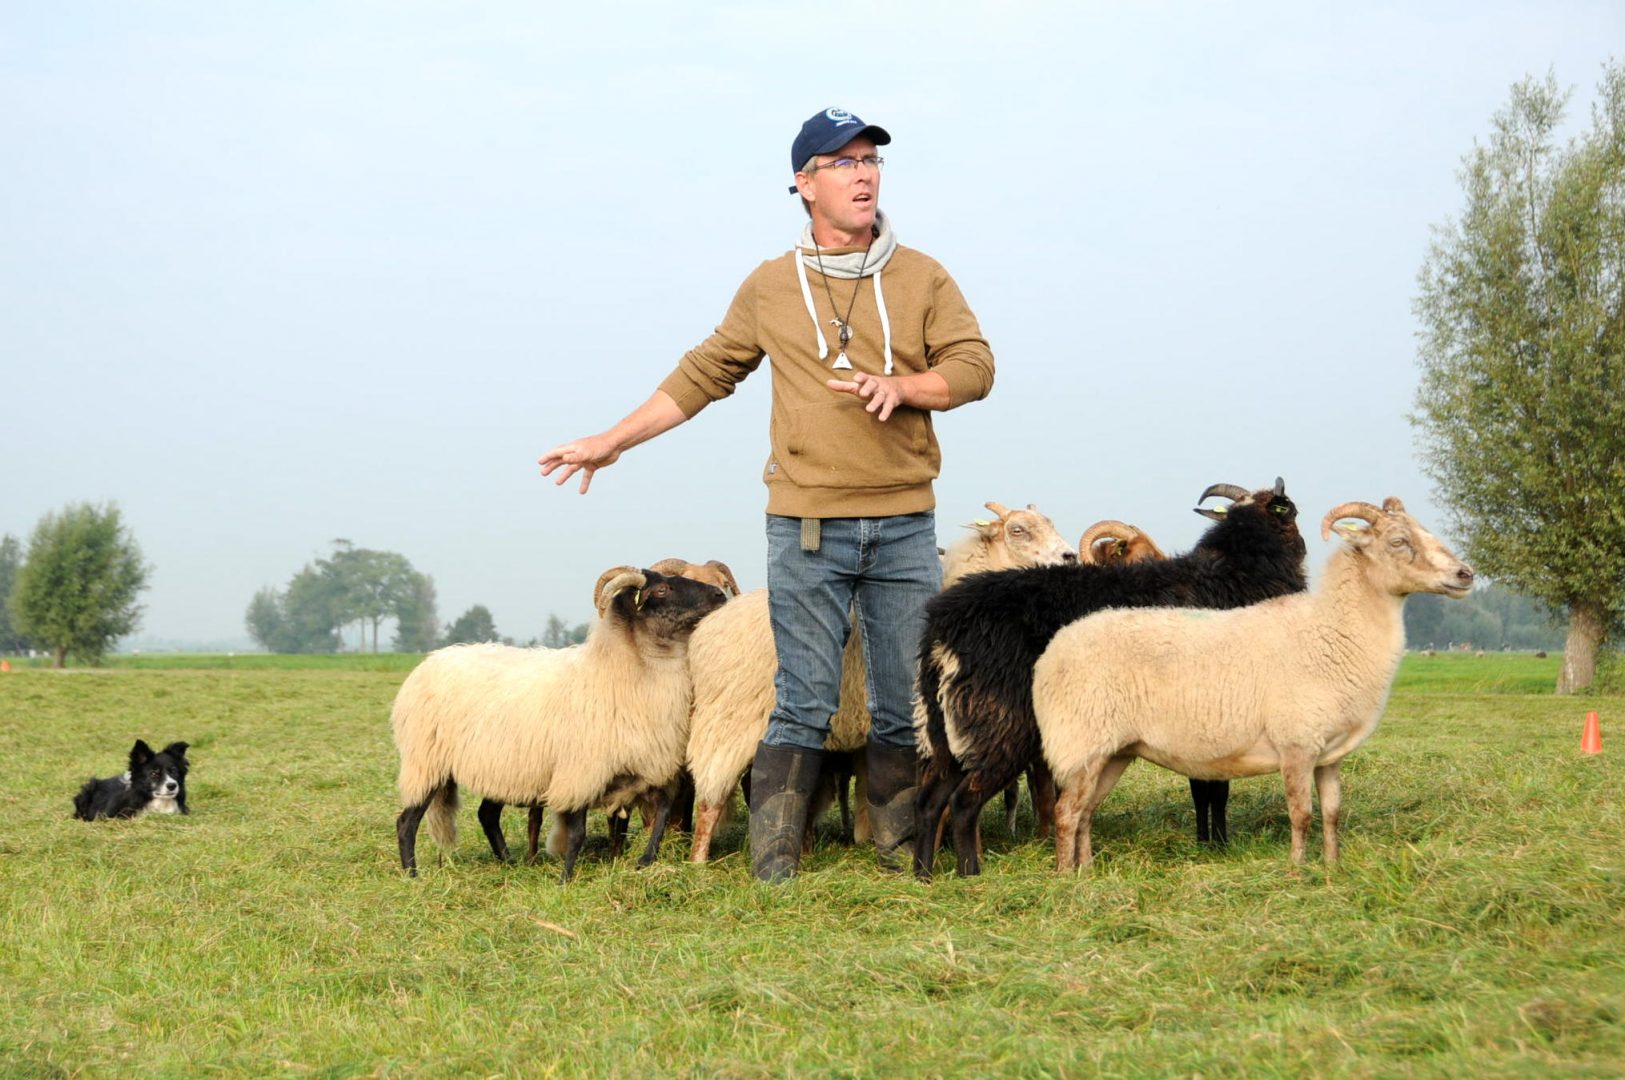 Workshop schapendrijven door een ervaren schapendrijver